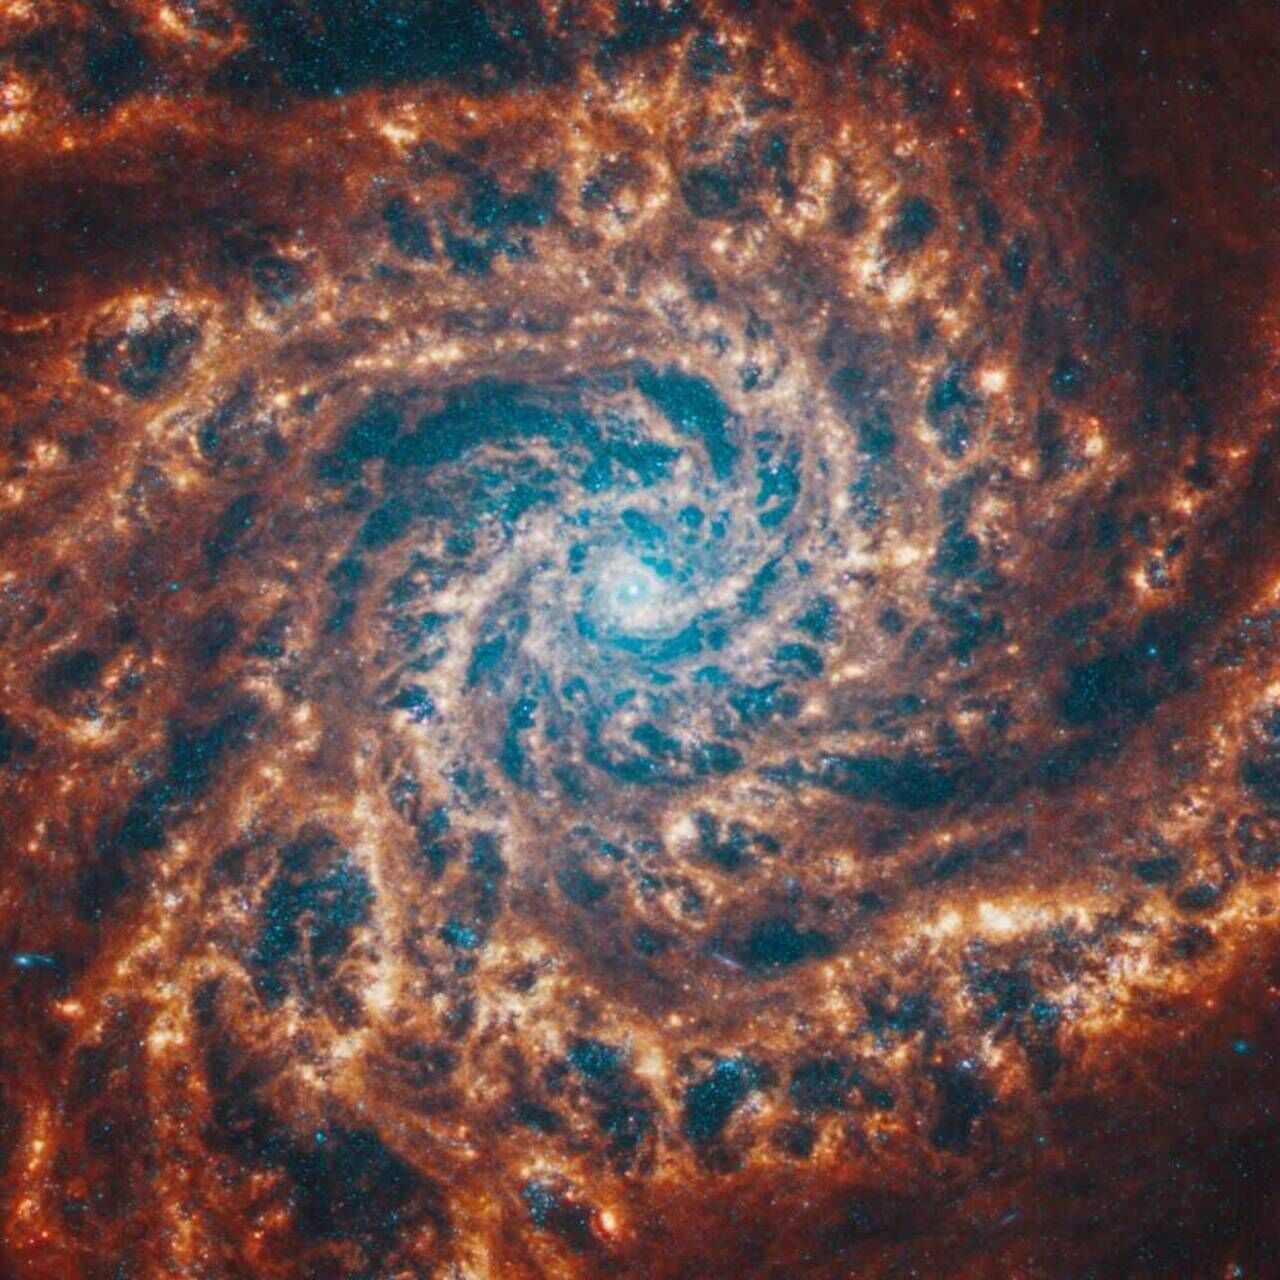 Mester az űrrendszerekben: a James Webb teleszkóp által leképezett spirálgalaxis